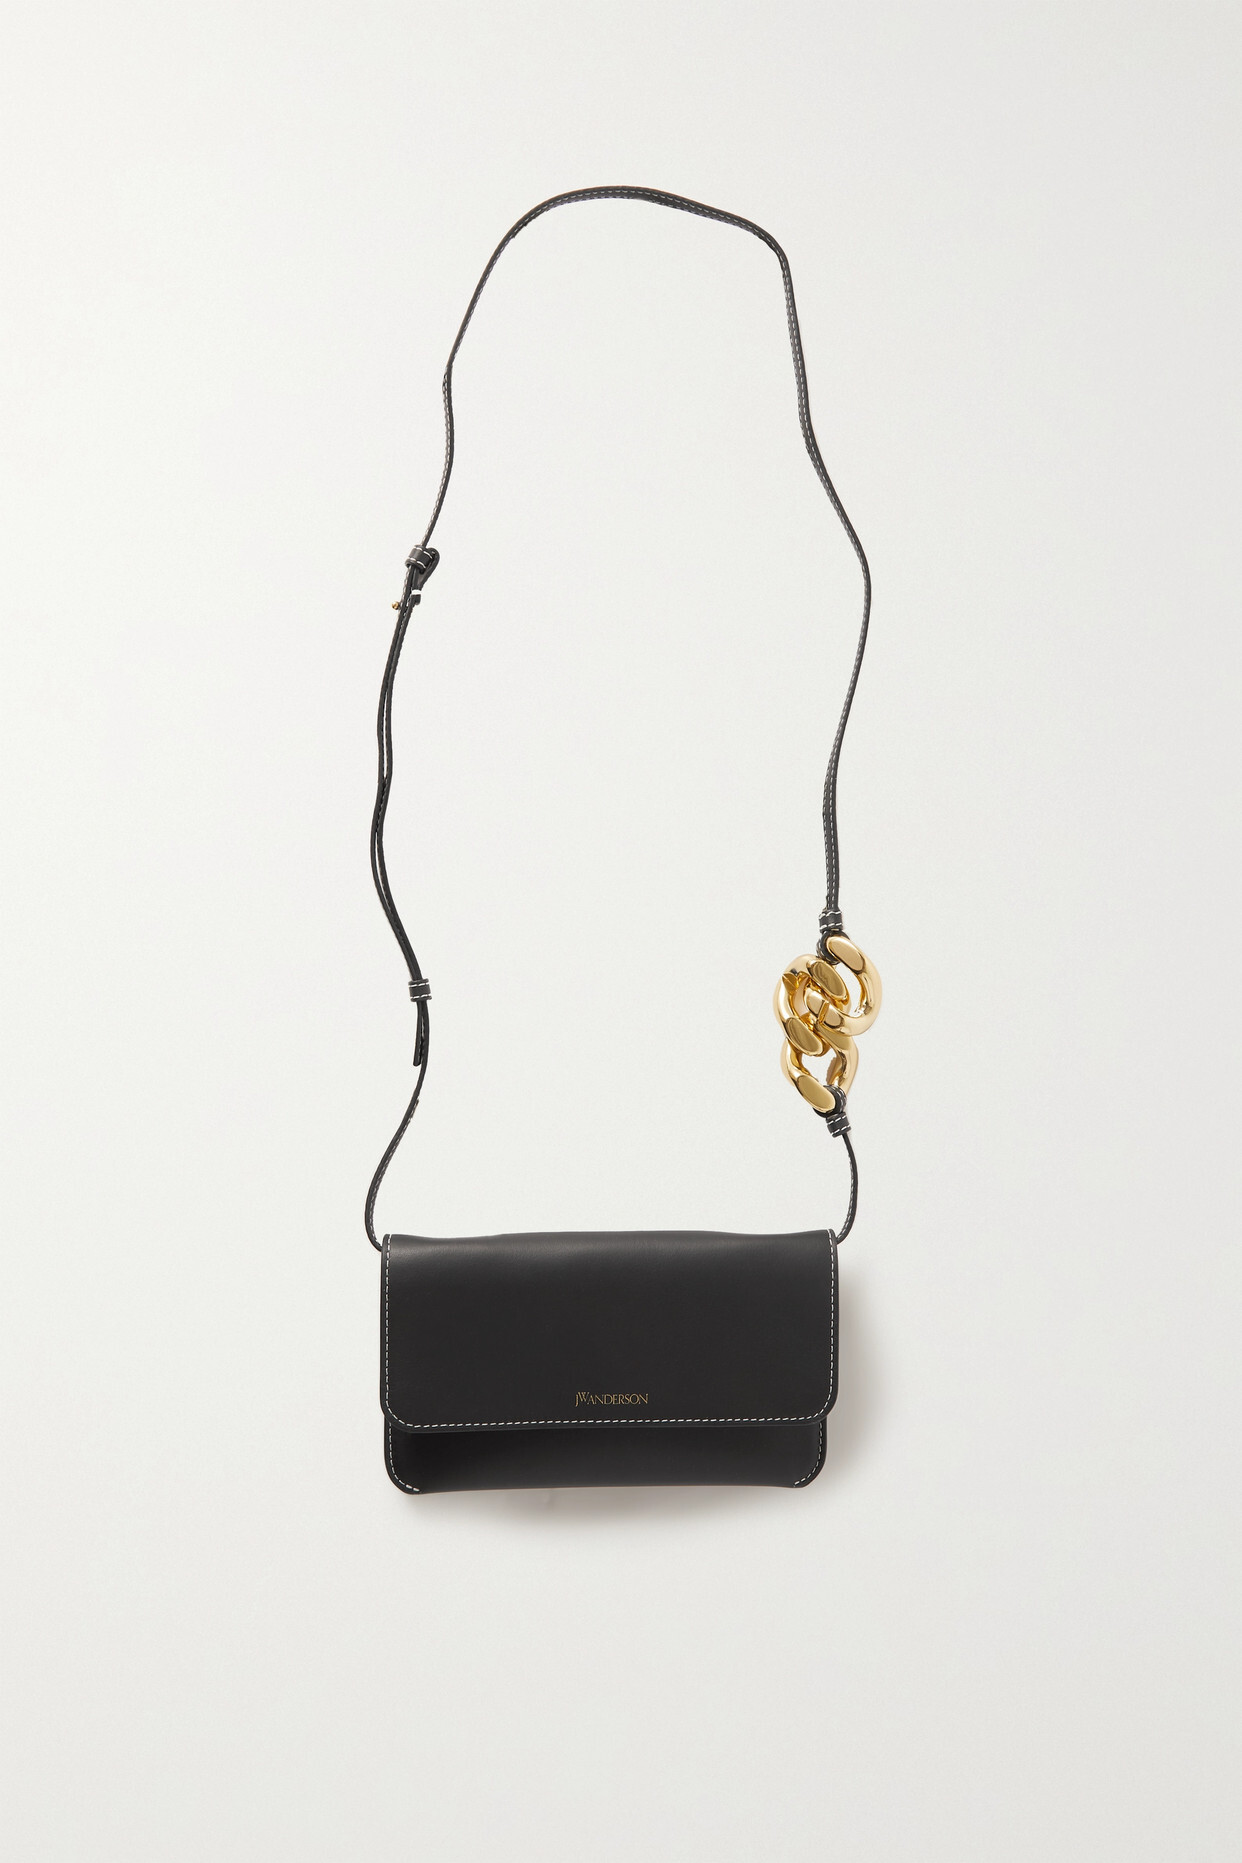 JW Anderson - Chain-links Leather Shoulder Bag - Black